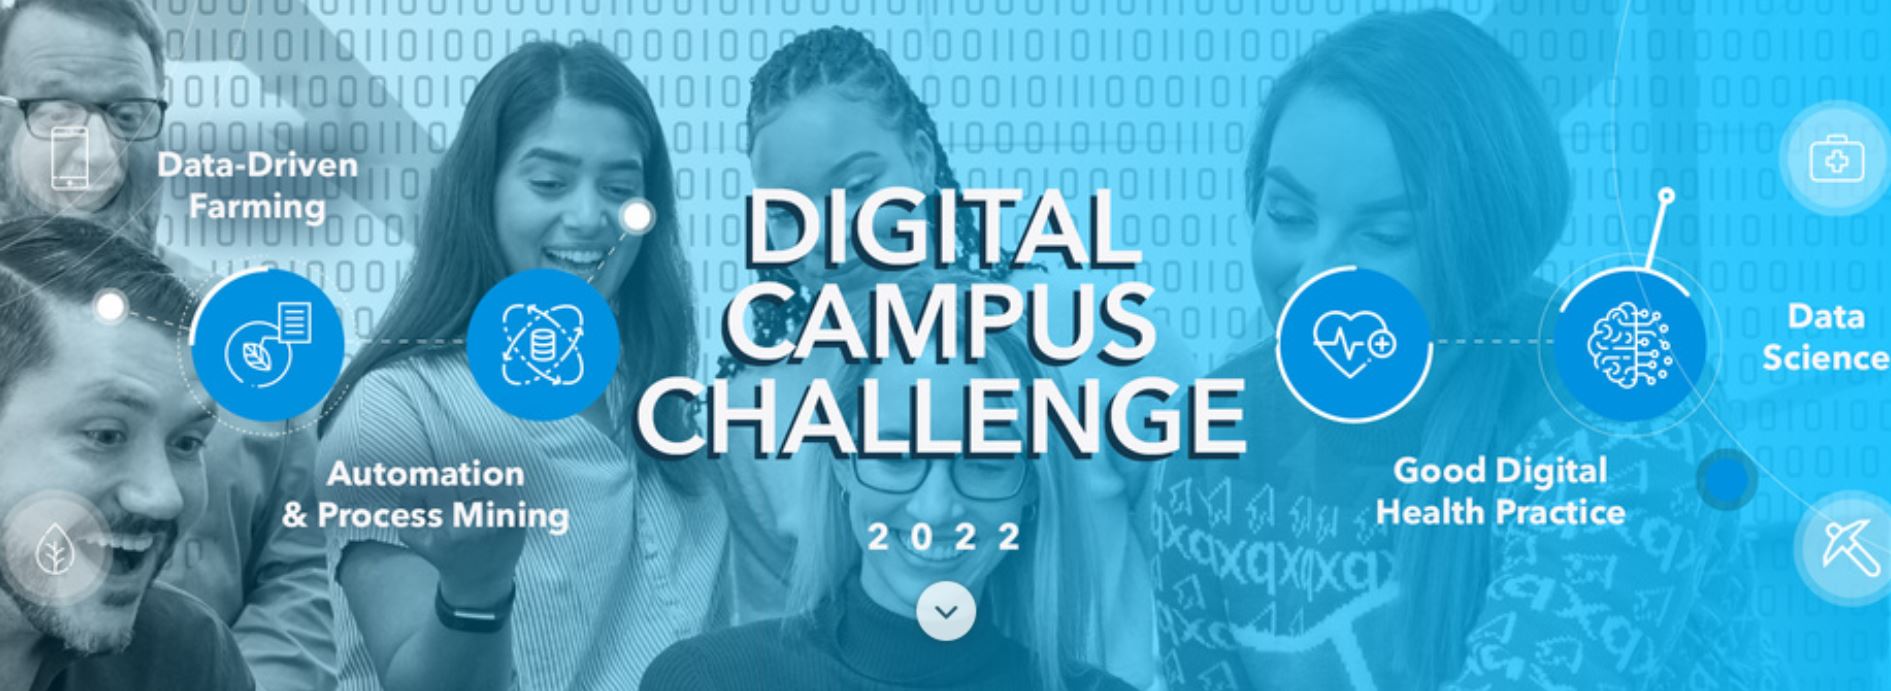 Concurso Digital Campus Challenge de Bayer